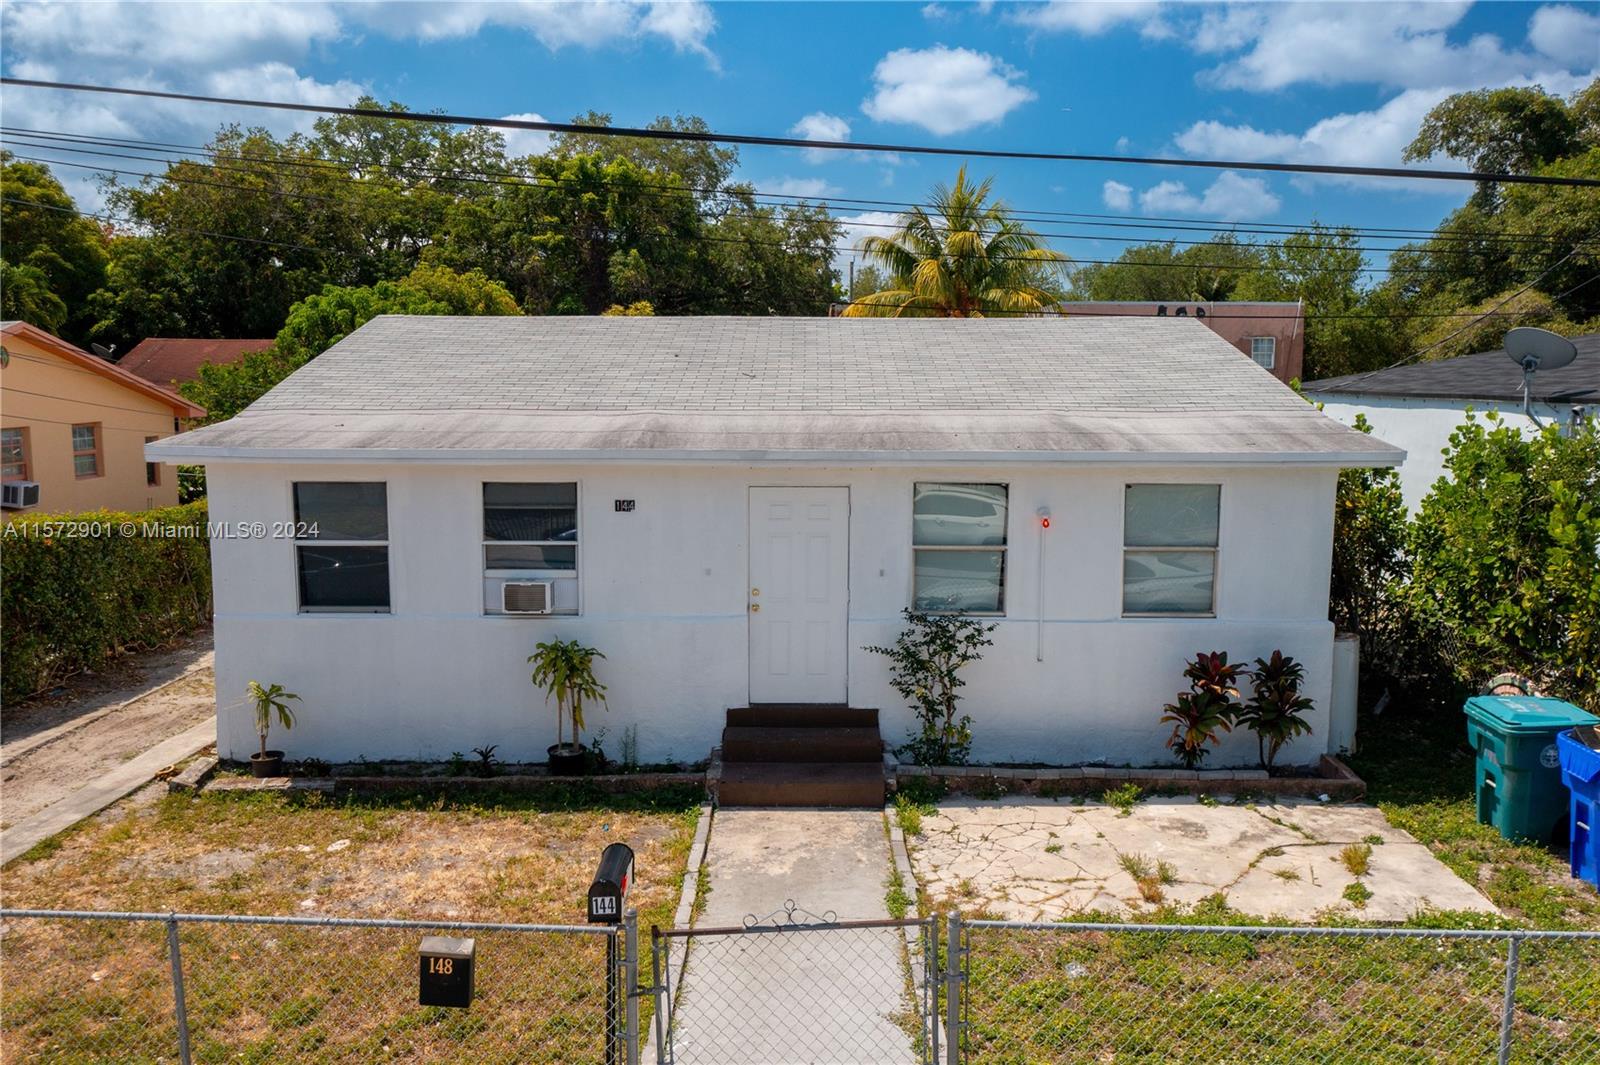 Rental Property at 144 Nw 53rd St St, Miami, Broward County, Florida -  - $799,900 MO.